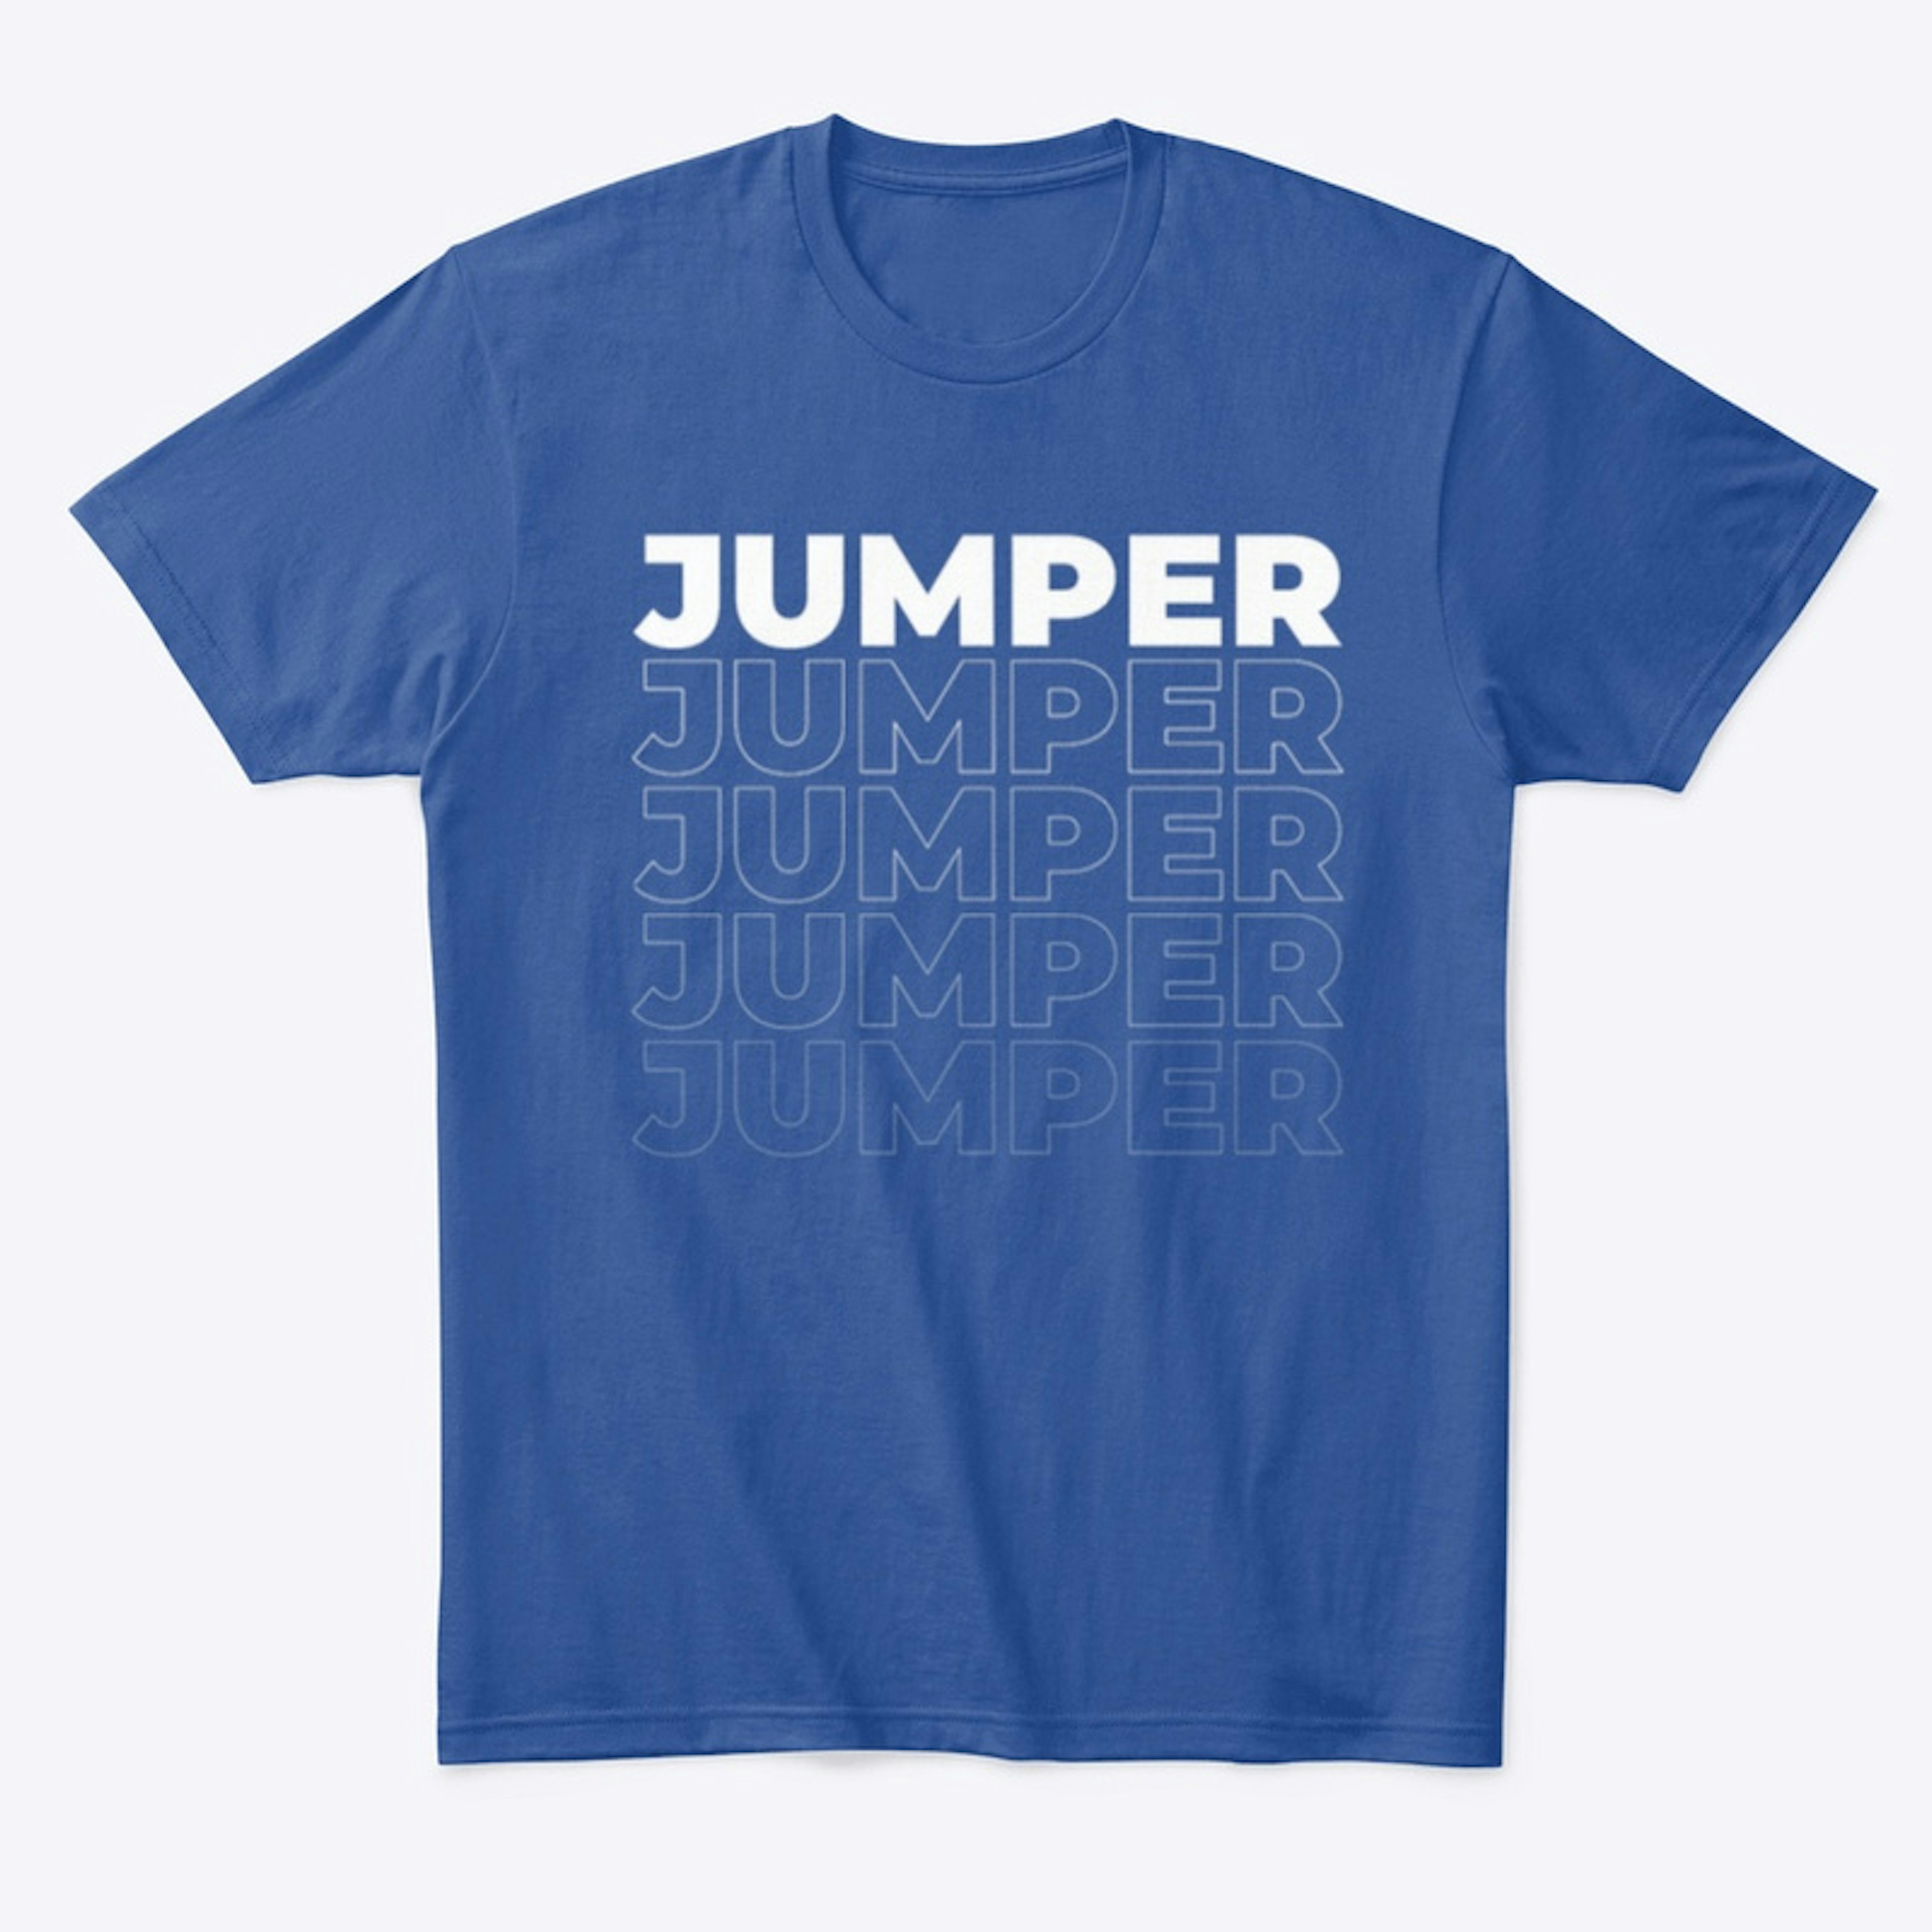 JUMPER comfort Tee